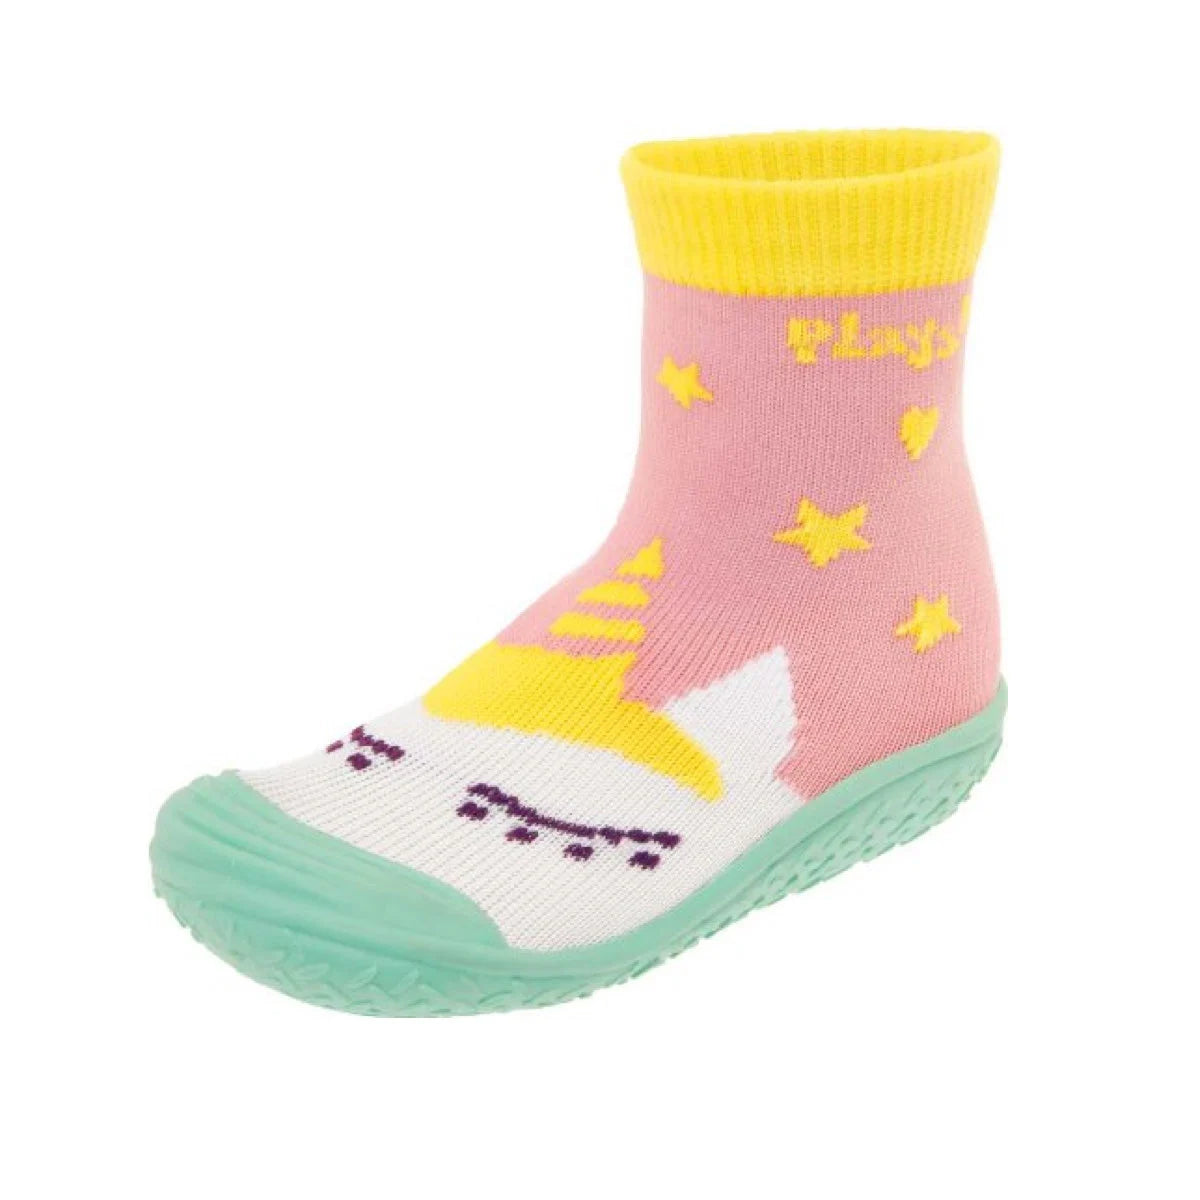 Aqua-Socken für Kinder mit Einhorn Motiv